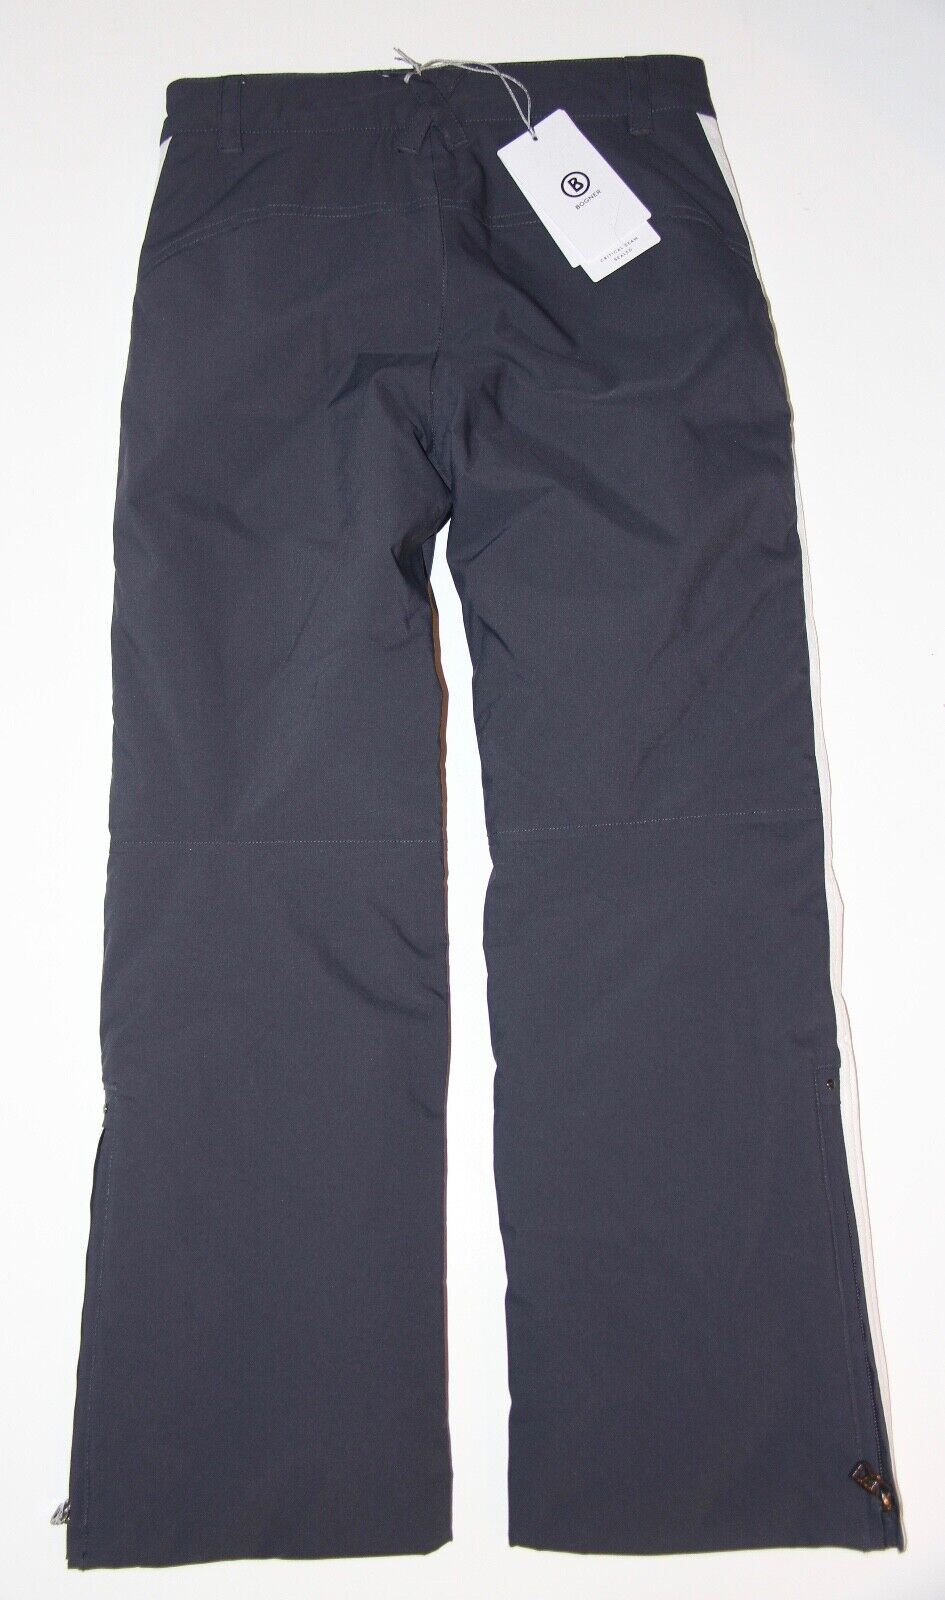 Bogner Girls Frenzi-T Insulated Ski Pant - Large US 12 - Navy Blue/White - NEW Bogner Frenzi-T 1570-5186 464 - фотография #3